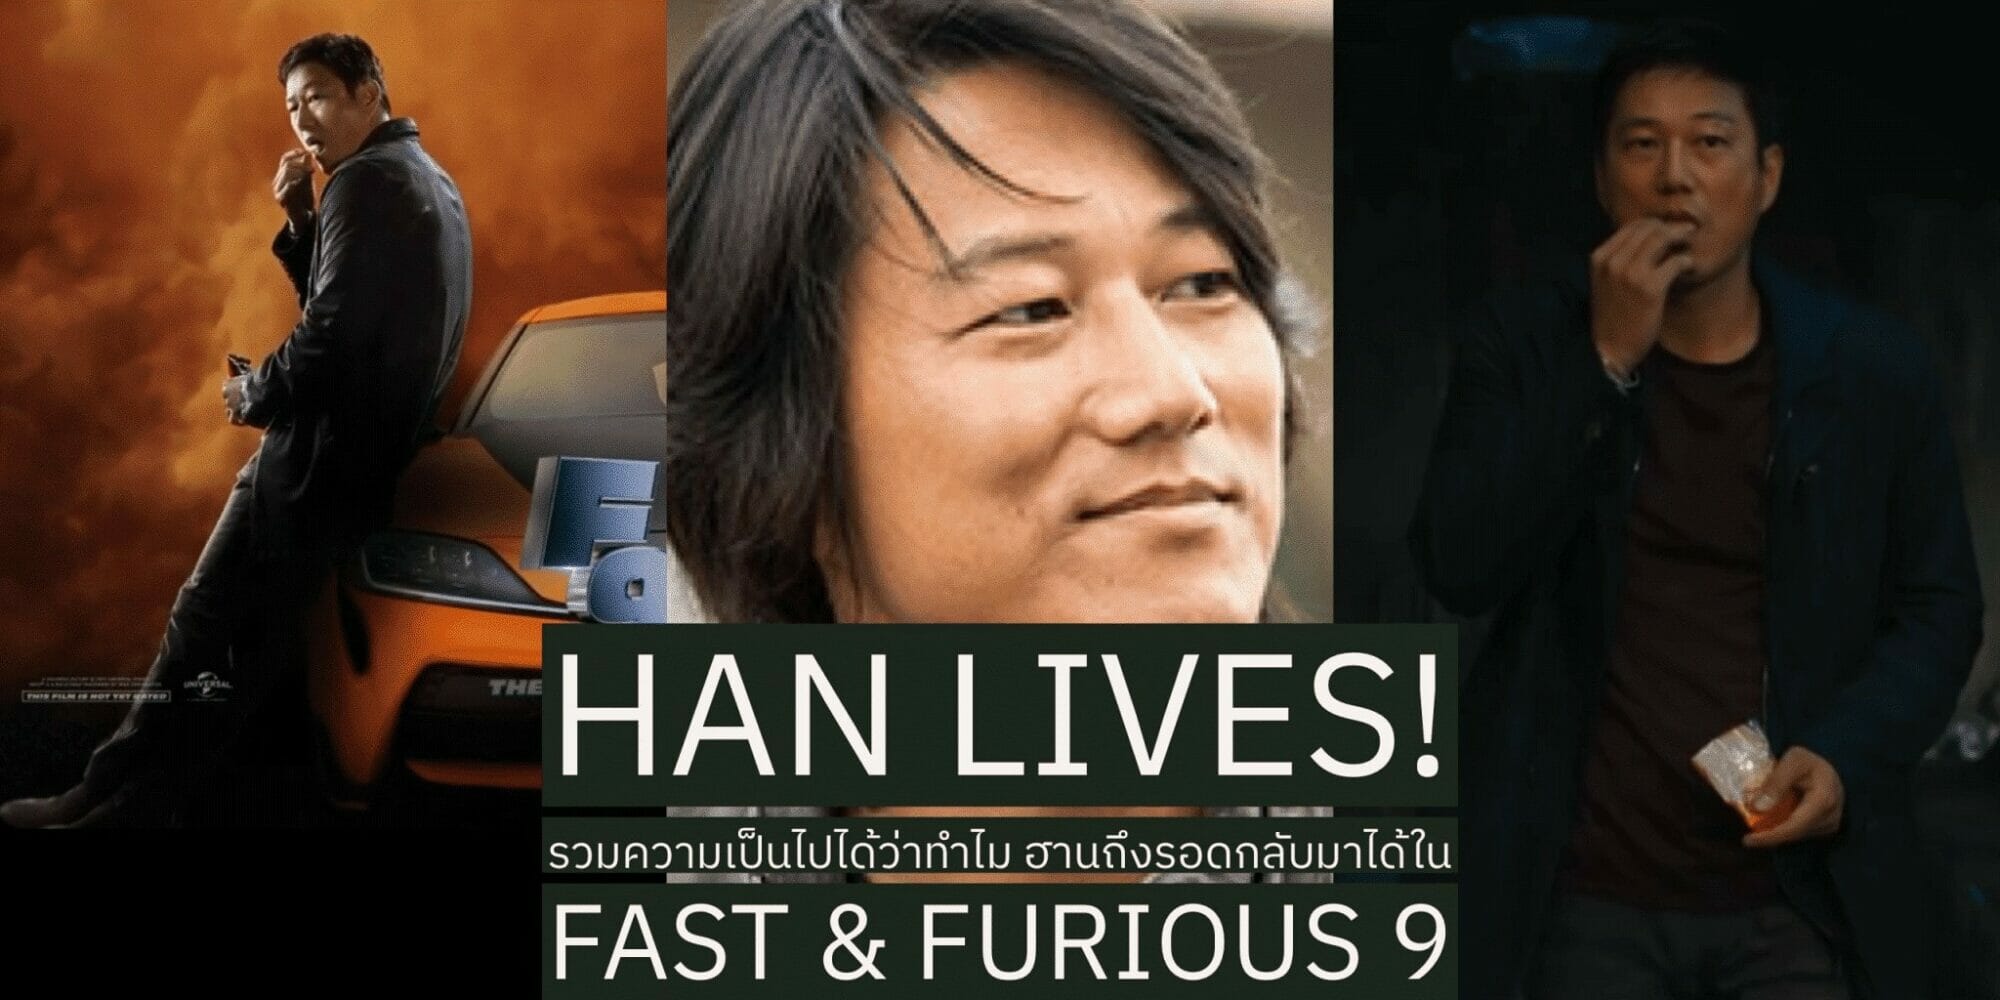 Han Lives! รวมความเป็นไปได้ที่ทำให้ ฮาน รอดกลับมาใน Fast & Furious 9 1